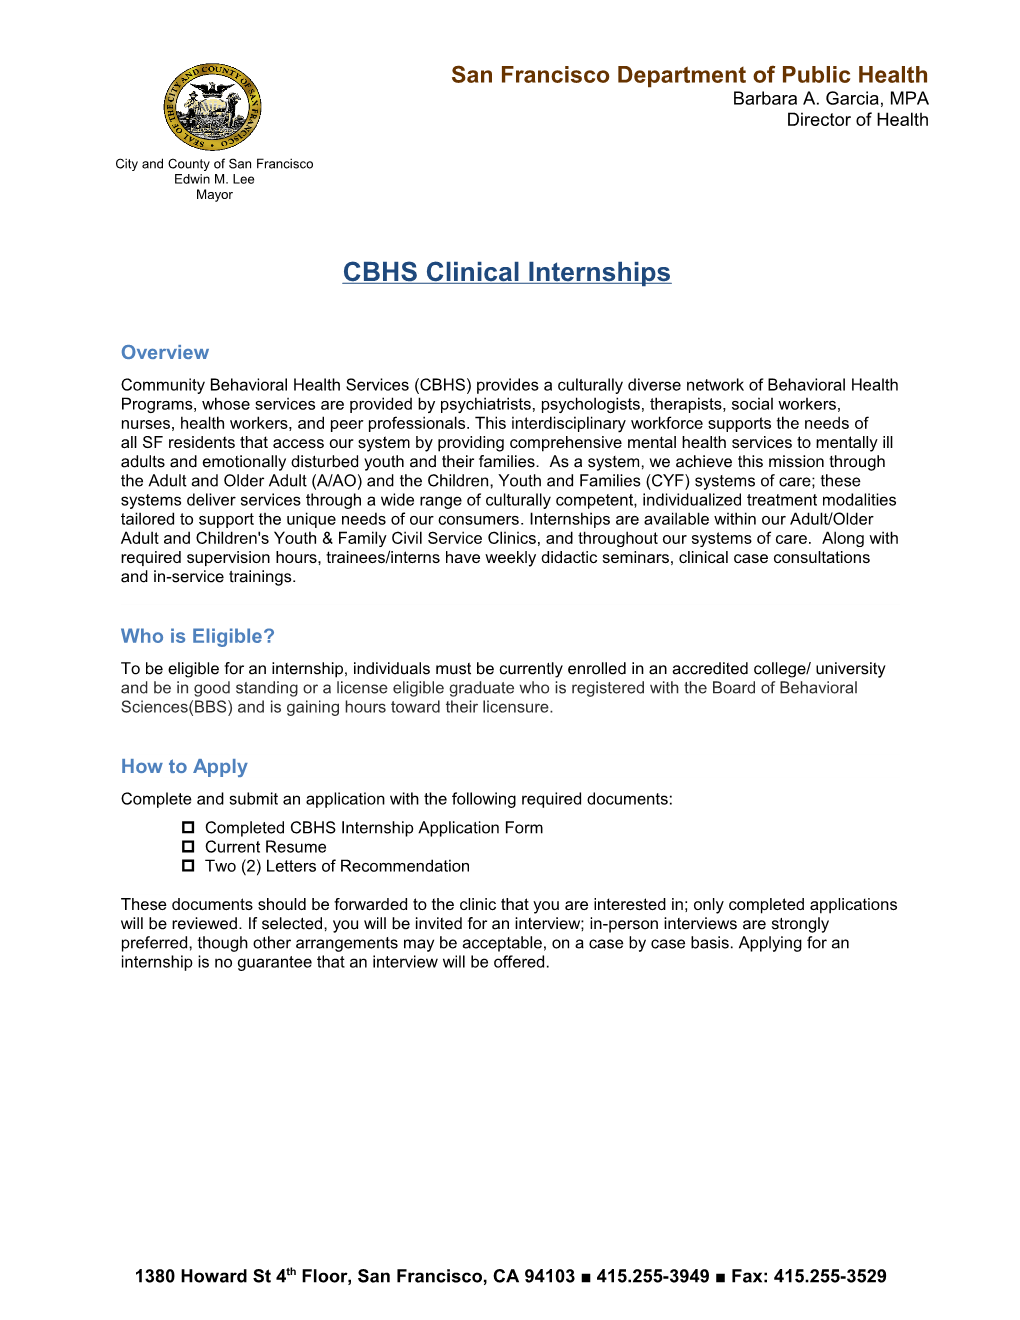 CBHS Clinicalinternships